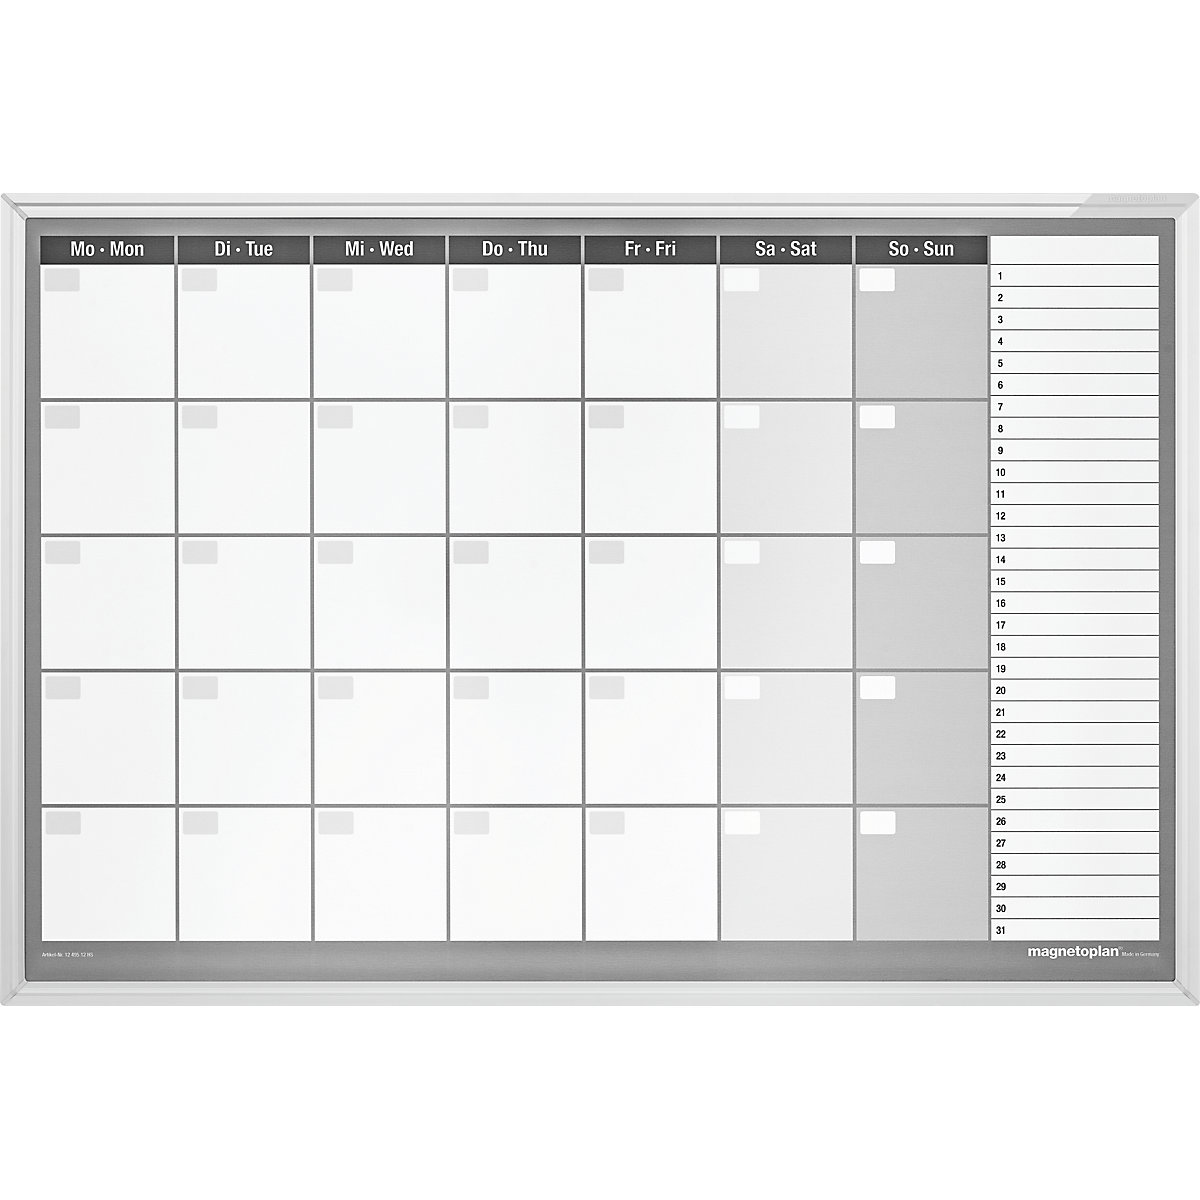 Planning mensile tipo CC, set di accessori incl. - magnetoplan